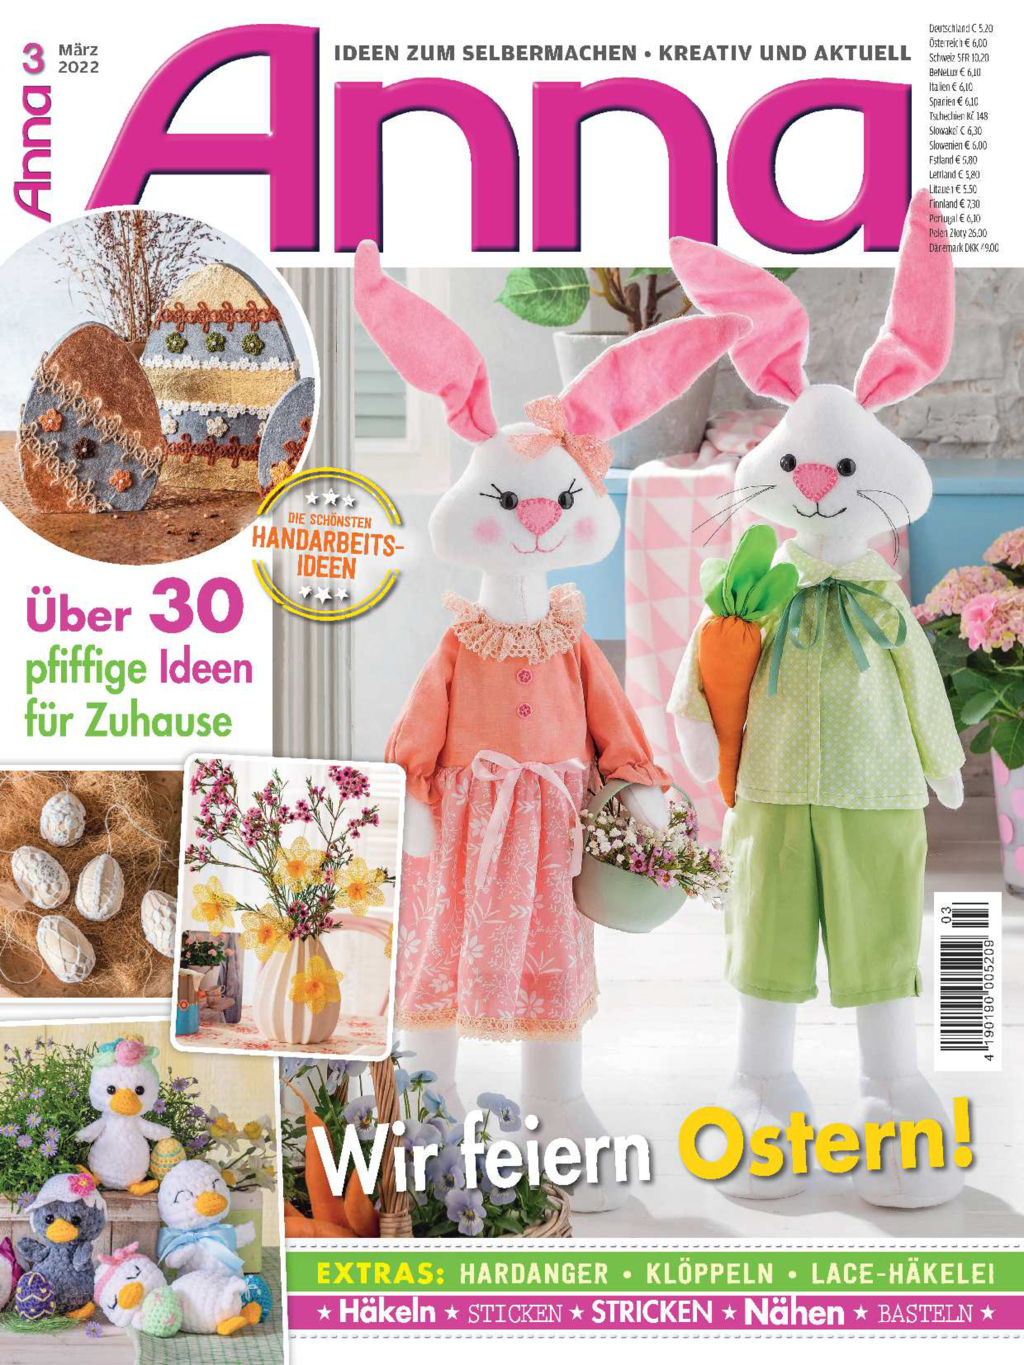 E-Paper: Anna Nr 3/2022 - Wir feiern Ostern!